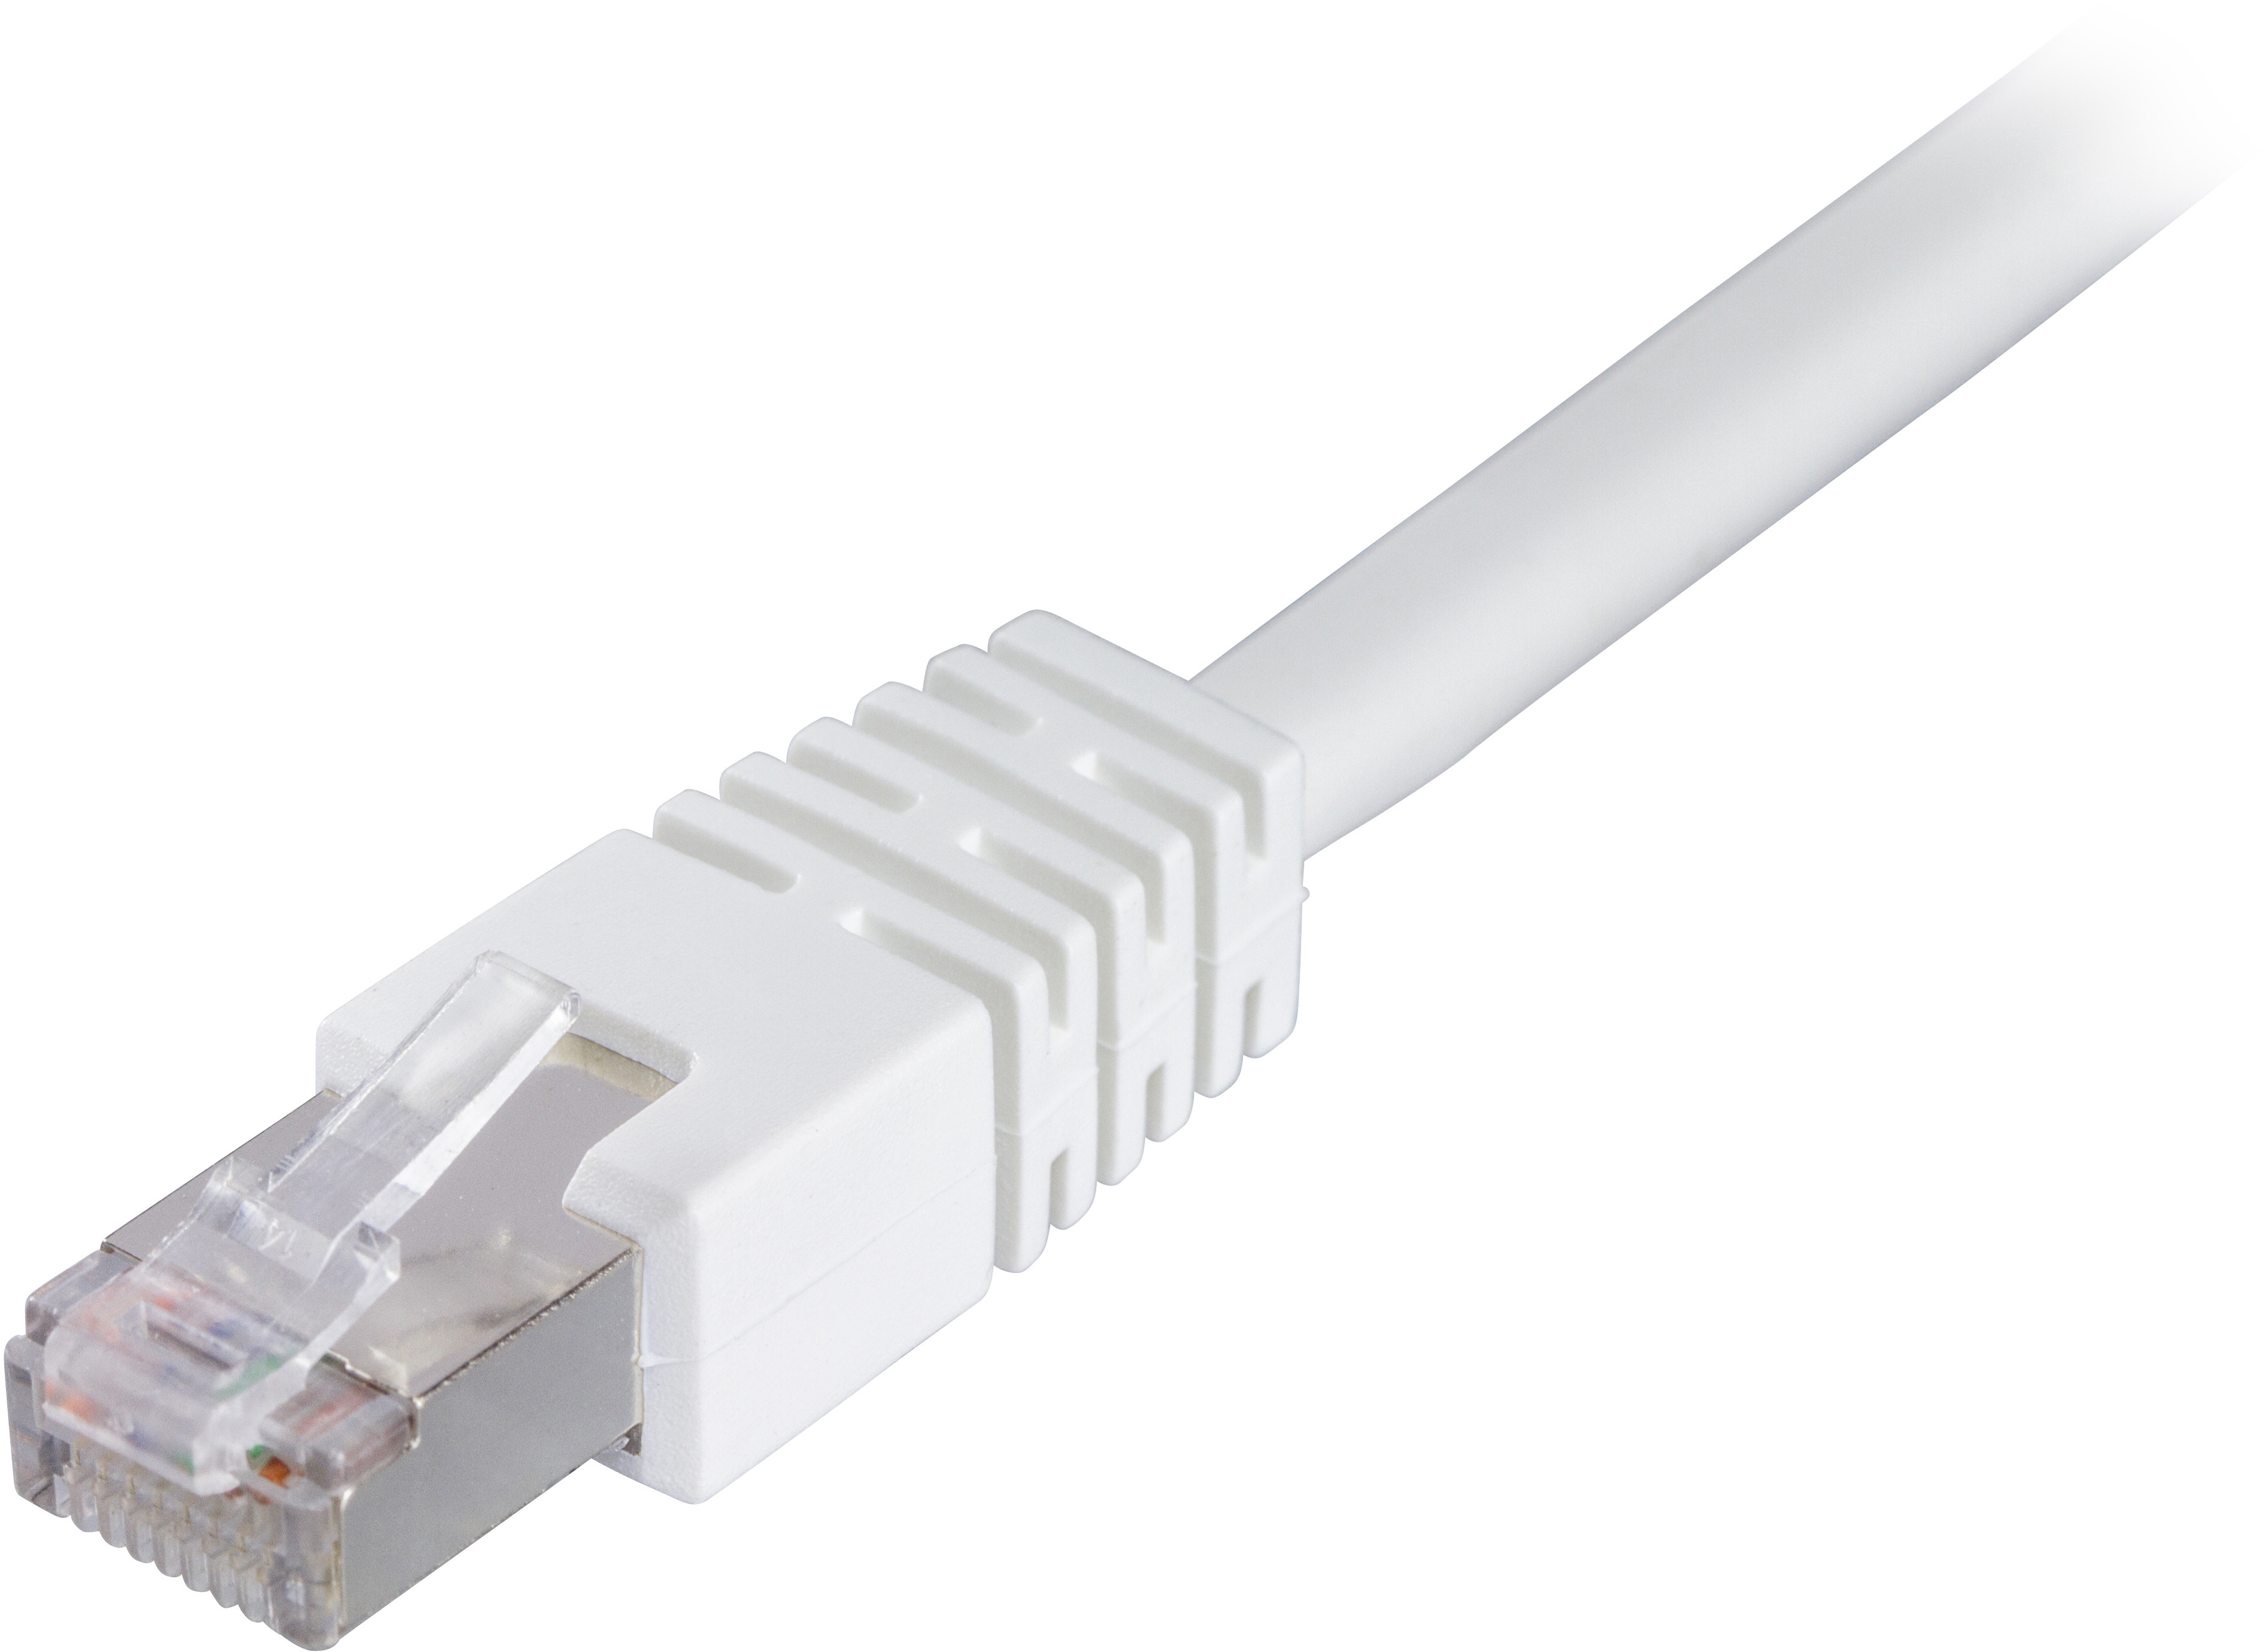 Cable DELTACO F / UTP Cat6 patch, LSZH, 0.3m, white / STP-603V